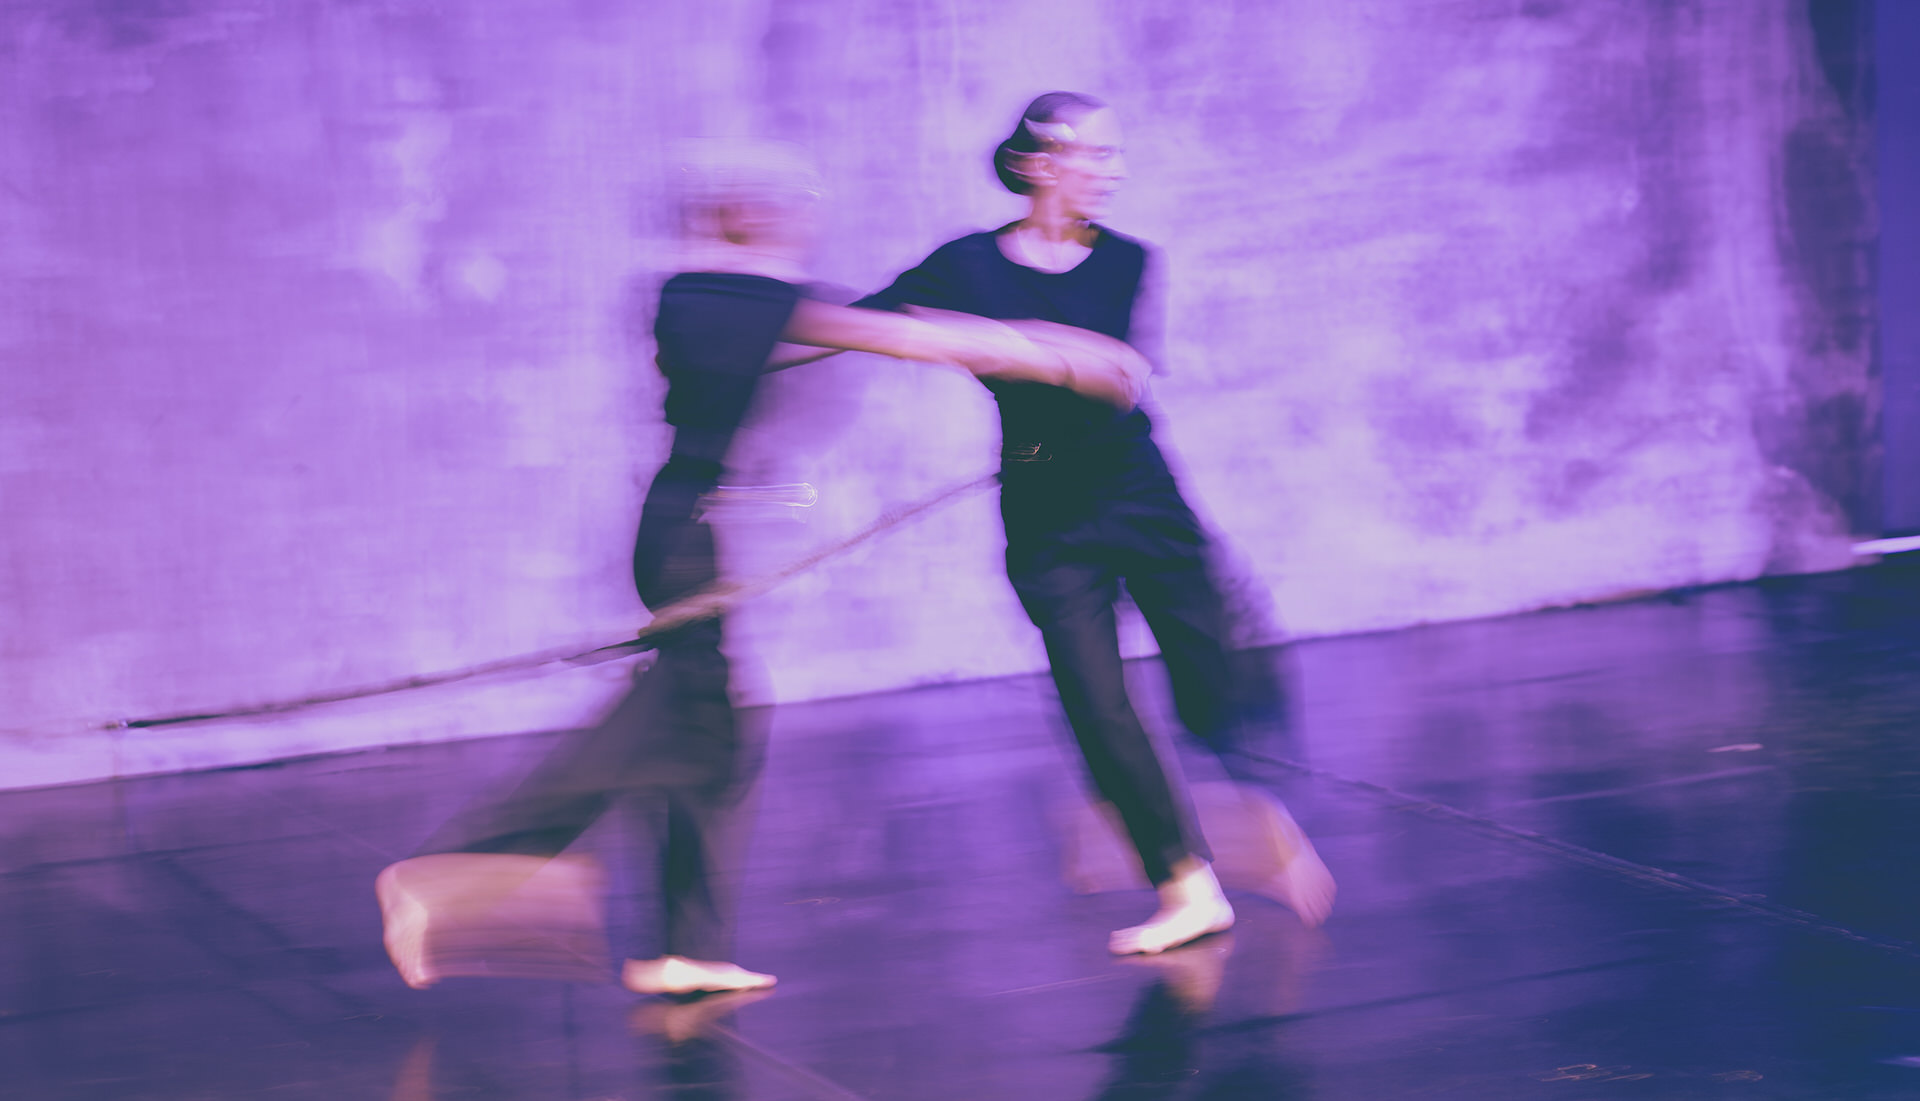 Η παράσταση "Shifting Time" της ομάδας χορού Griffon έρχεται στο Θέατρο ΠΛΥΦΑ